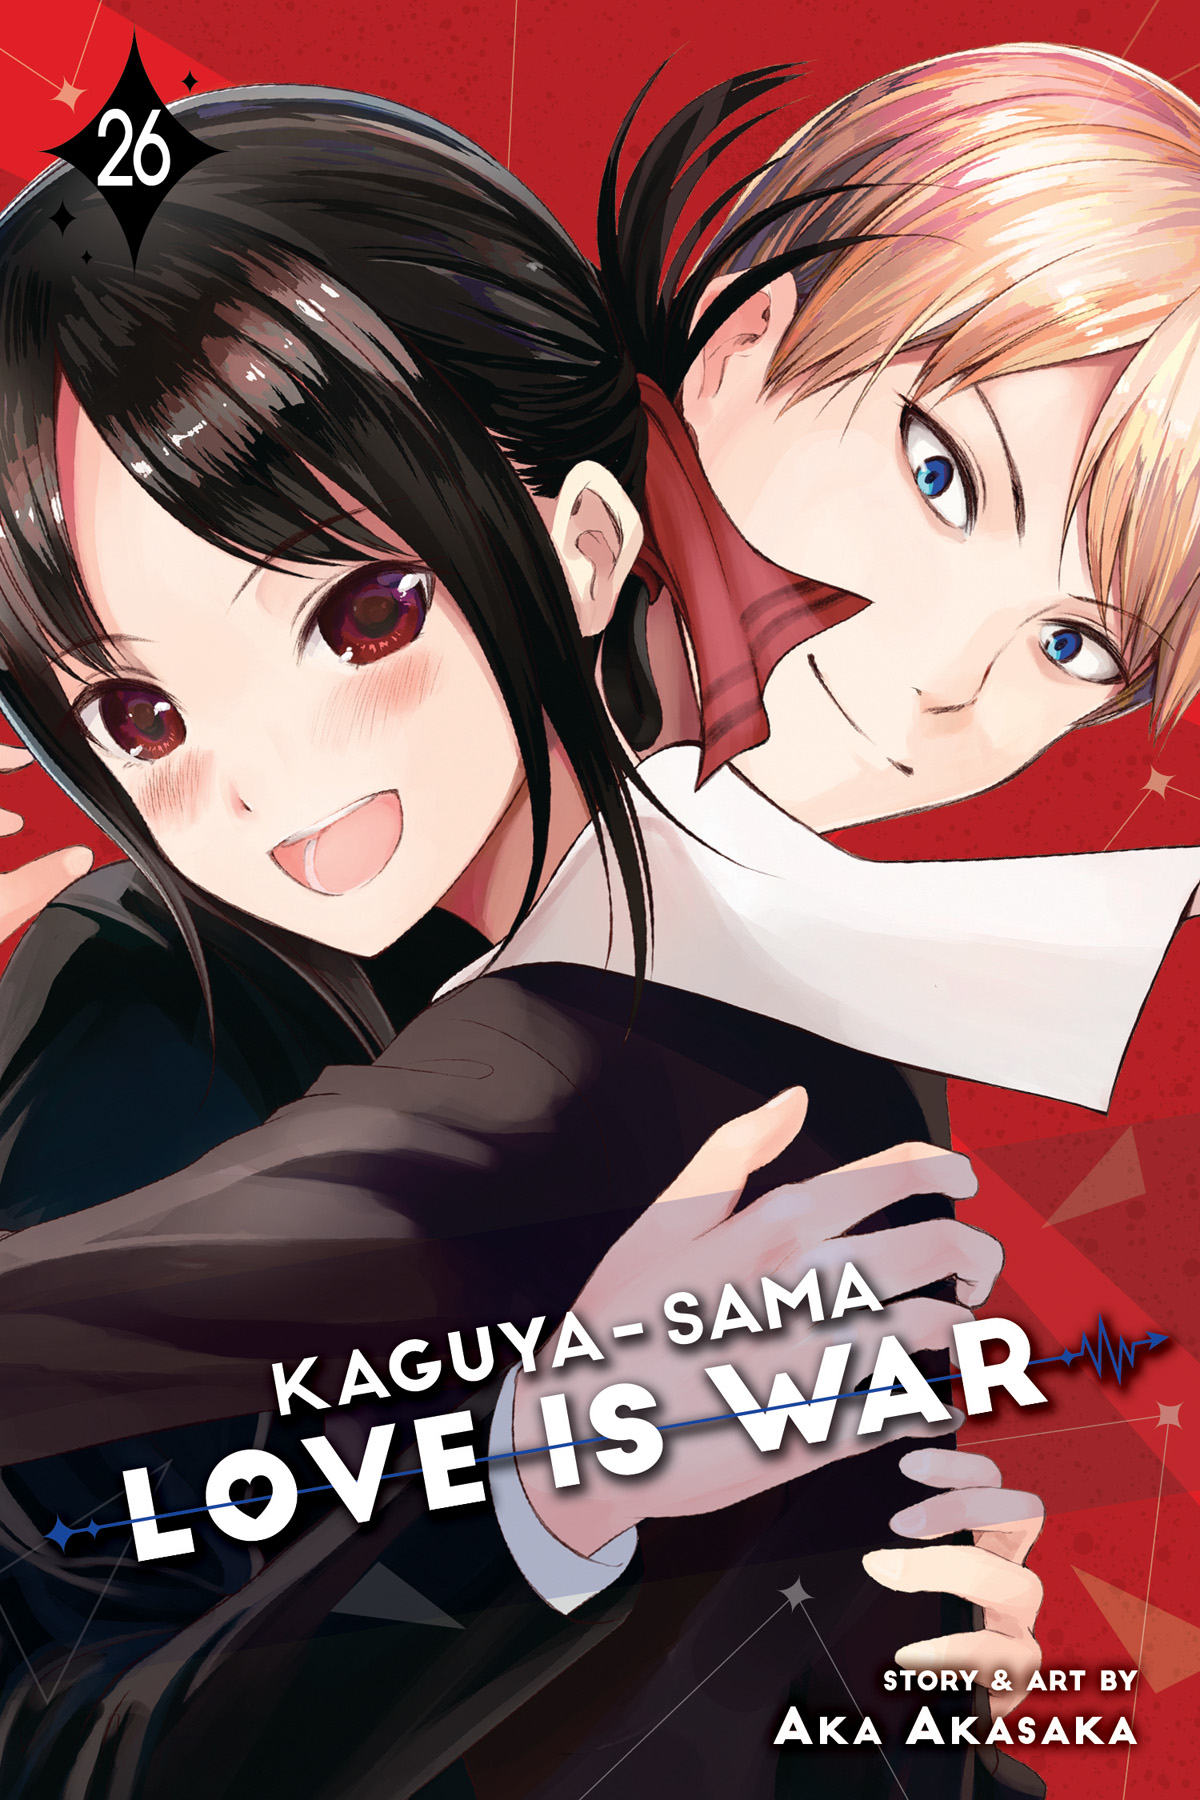 Kaguya Sama Love is War Manga Volume 26